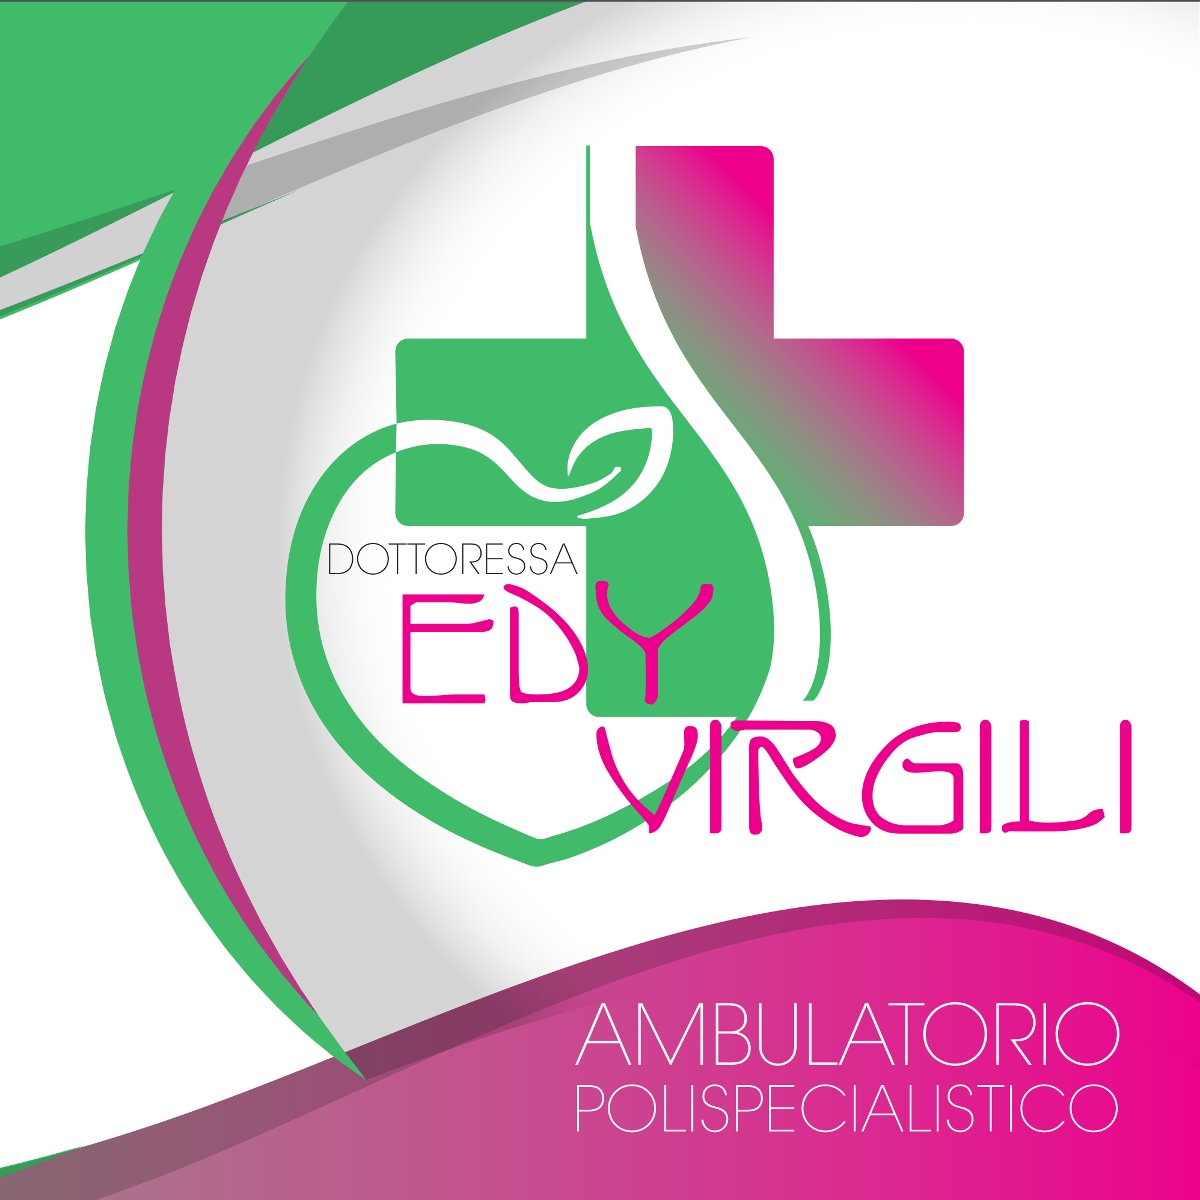 ambulatorio-polispcialistico-dott-ssa-edy-virgili-marche.png